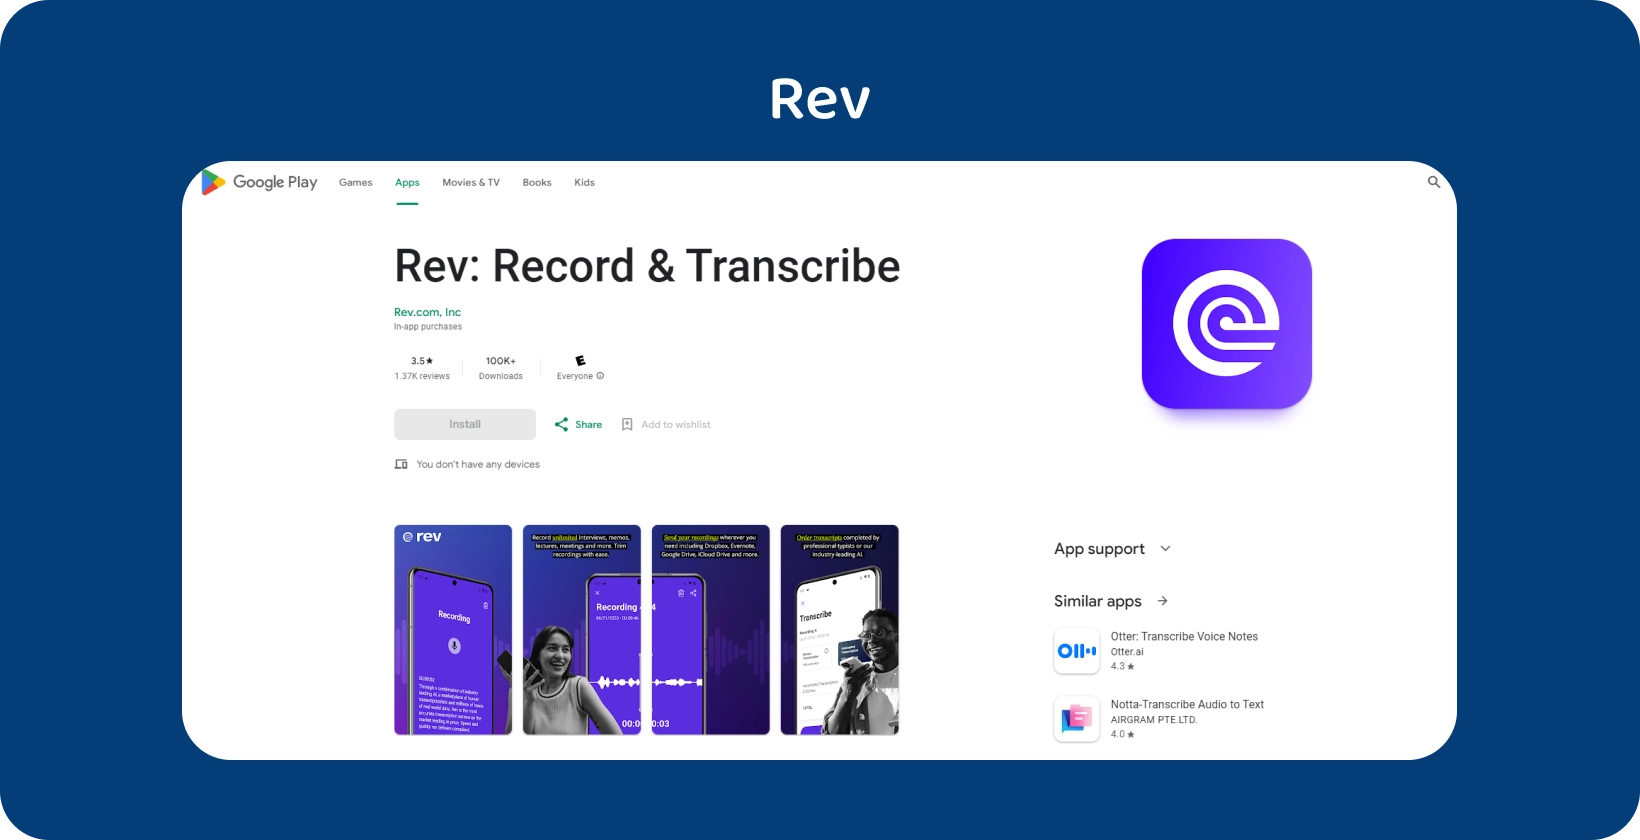 Google Play Store Anzeige der Rev App, Hervorhebung von Funktionen für die Aufnahme und Transkription auf Android Geräten.